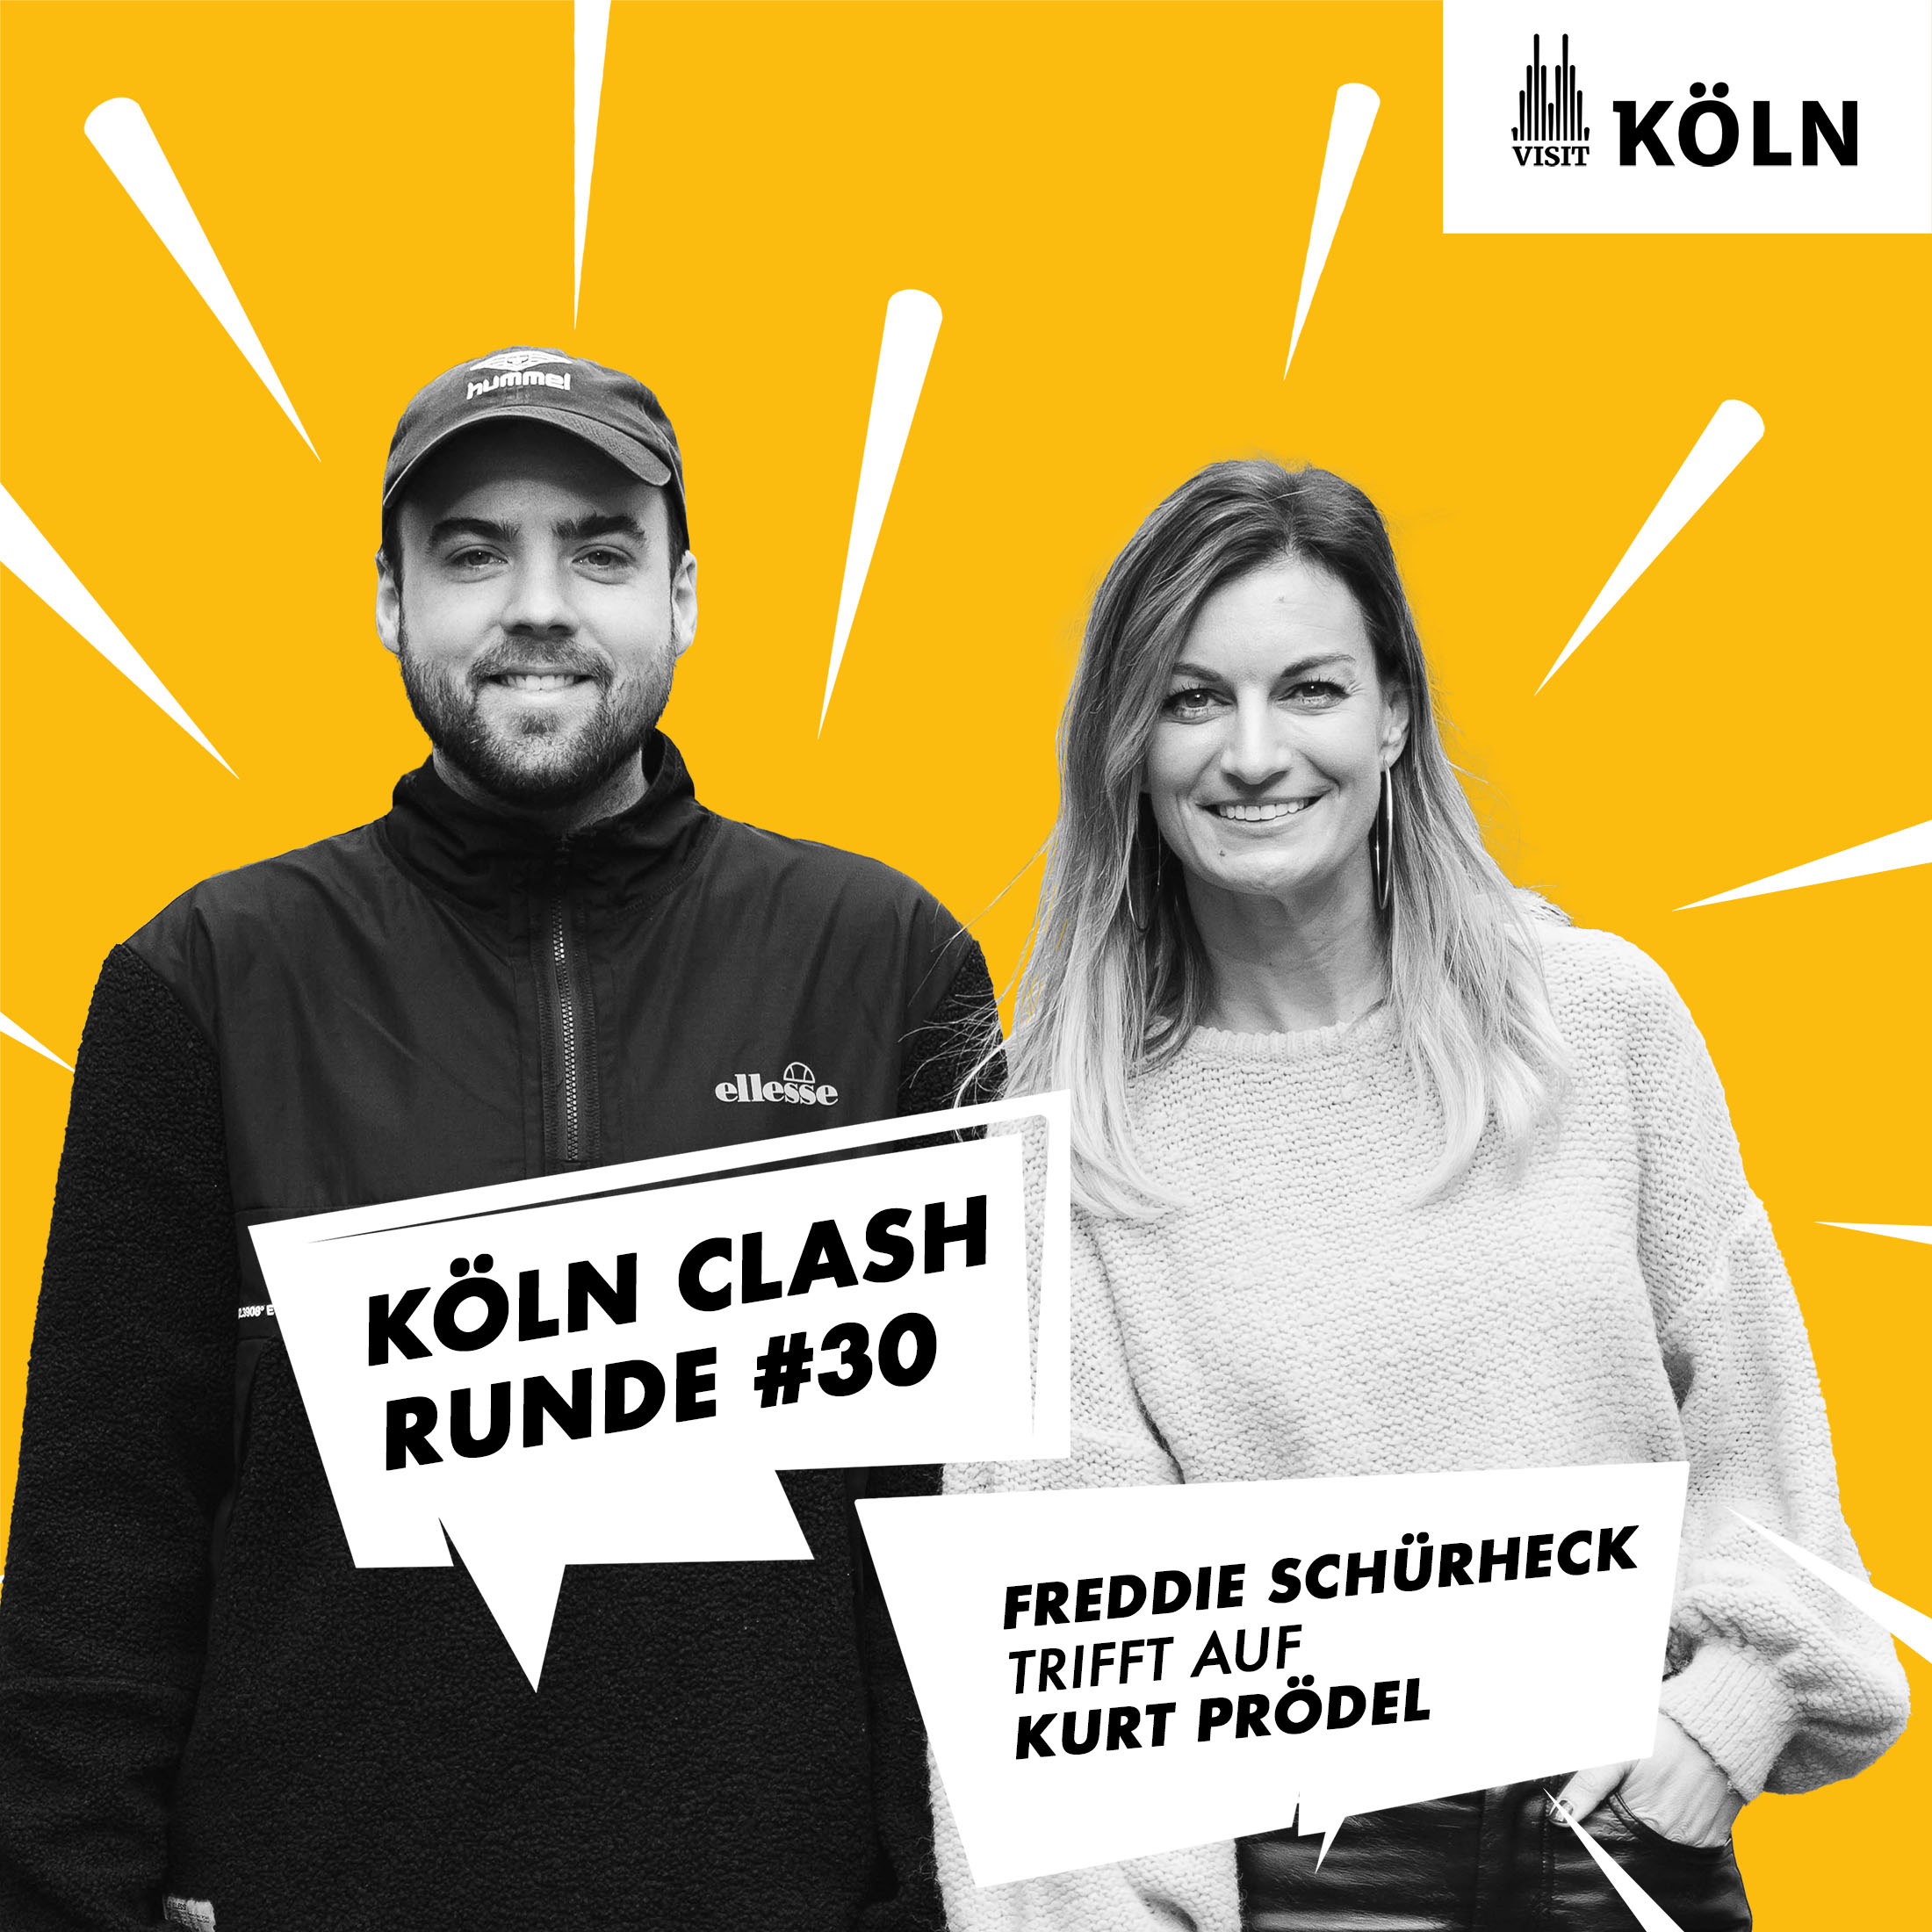 Köln Clash, Runde #30 – Freddie Schürheck trifft auf Kurt Prödel